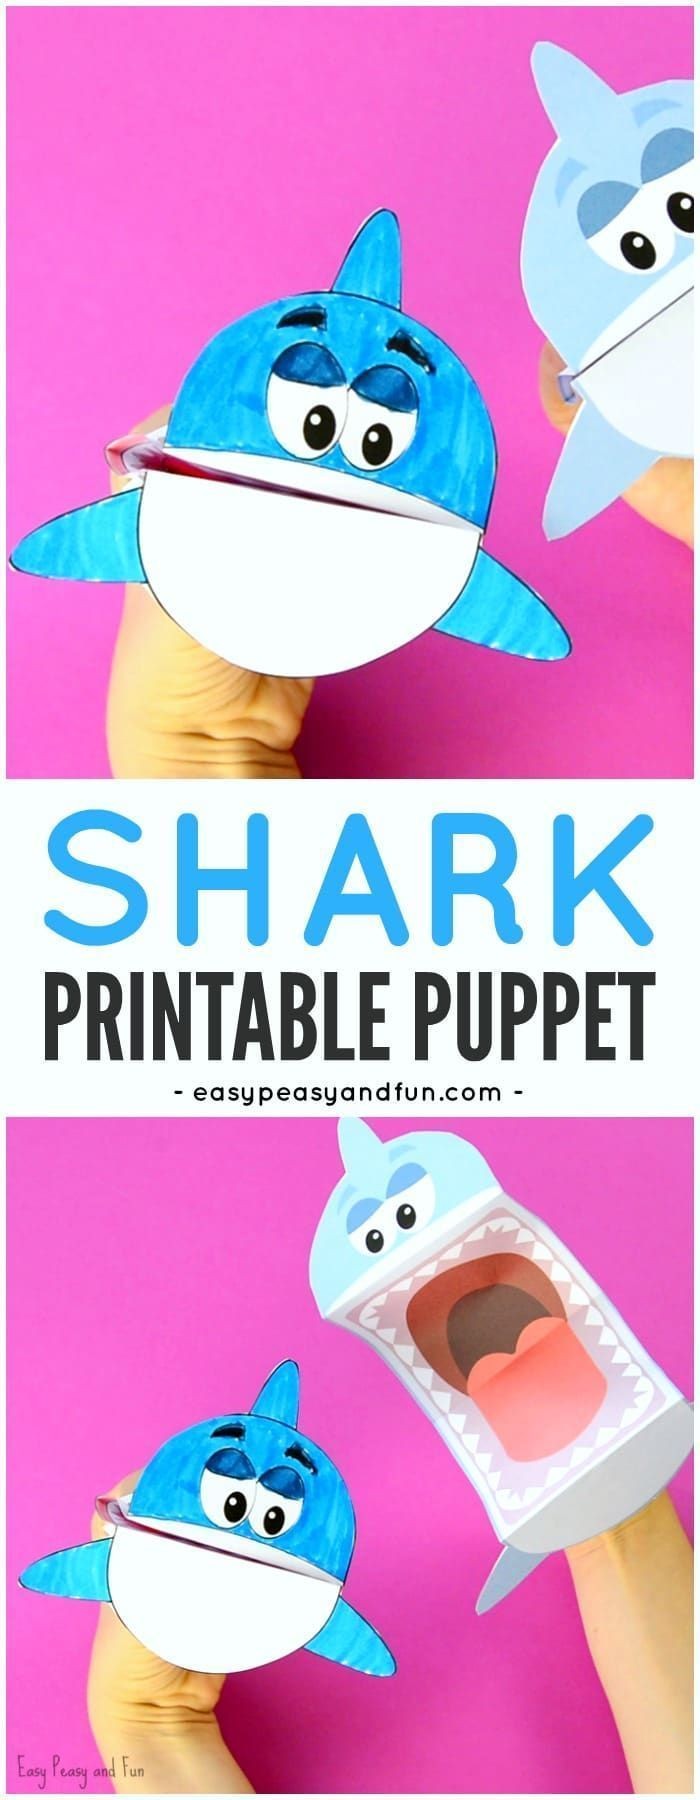 Printable Shark Papercraft Printable Papercrafts Printable Papercrafts